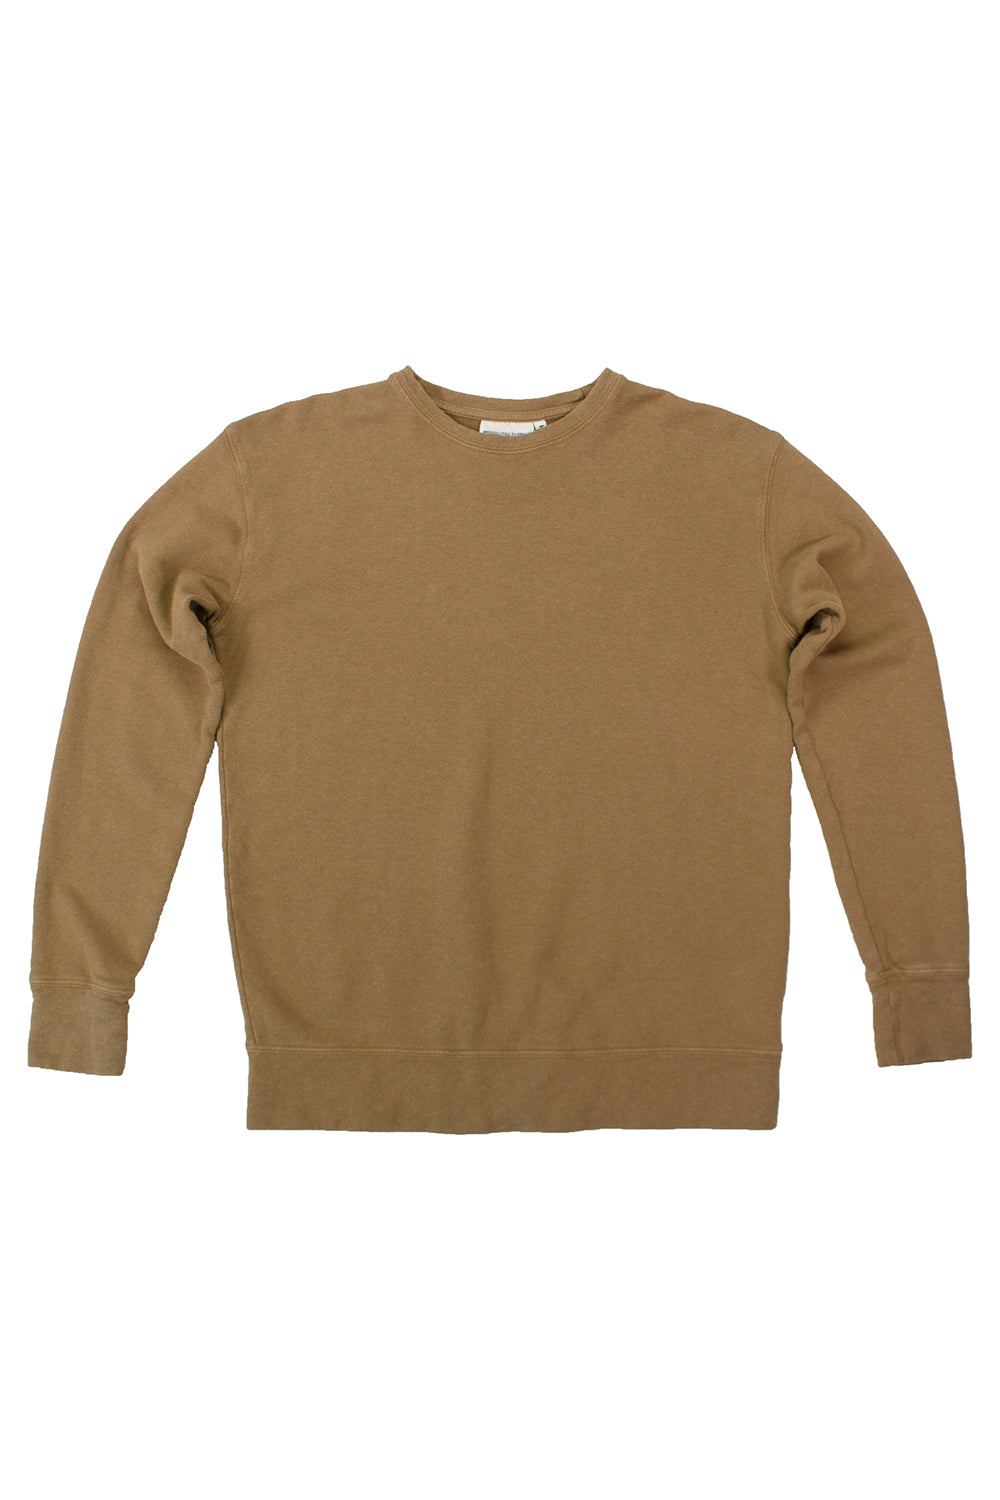 Tahoe Sweatshirt | Jungmaven Hemp Clothing & Accessories / Color: Coyote